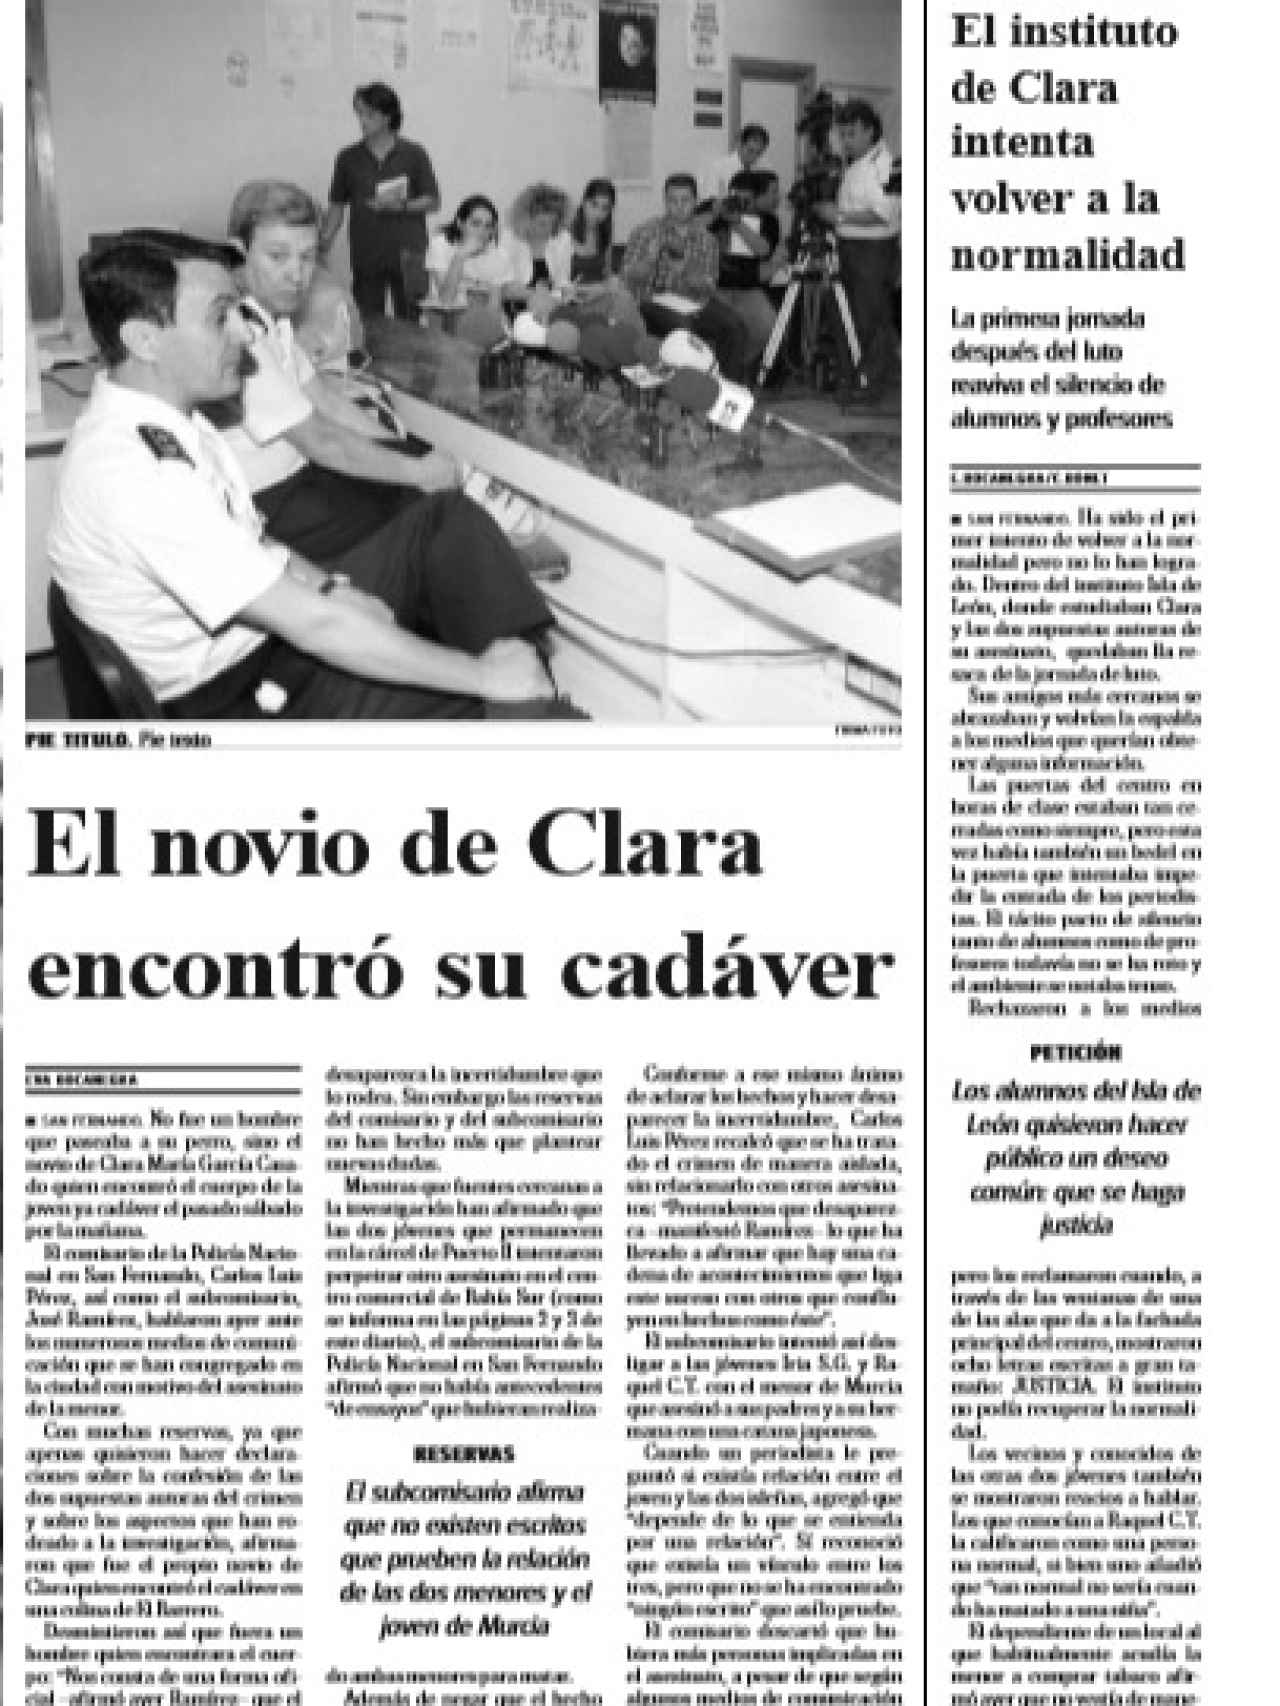 Los periódico de la época, como Diario de Cádiz, siguieron día a día el devenir de un caso que conmocionó a la provincia gaditana.